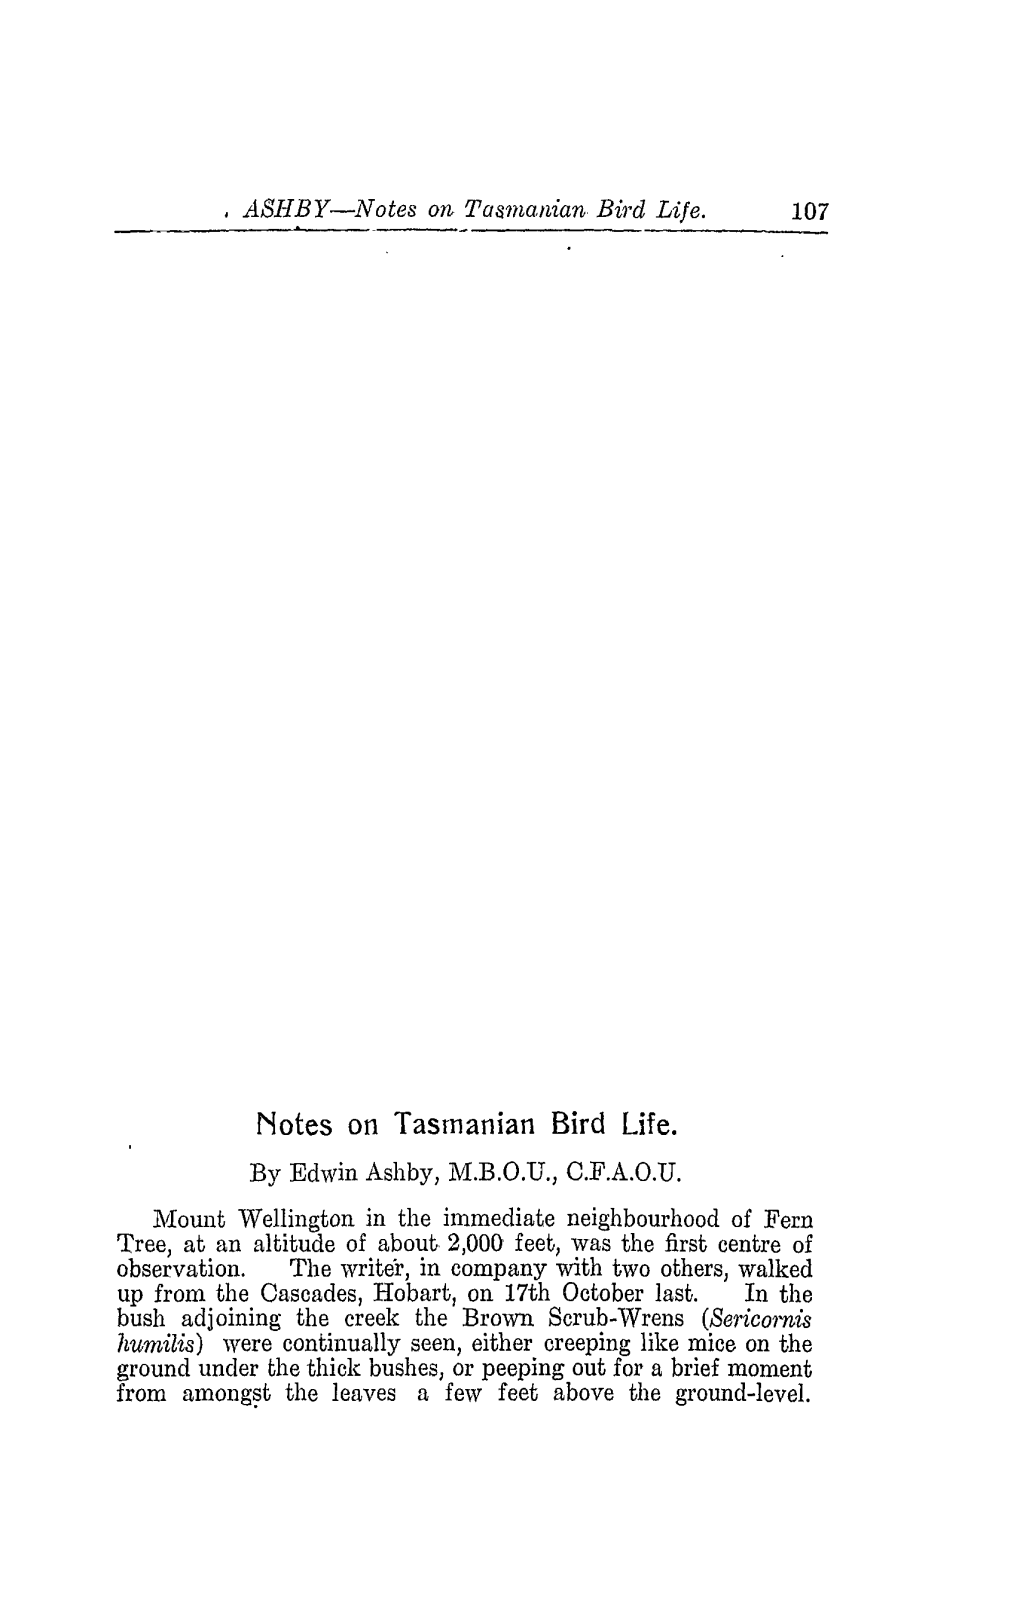 Notes on Tasmanian Bird Life. by Edwin Ashby, M.B.O.D., C.F.A.O.U